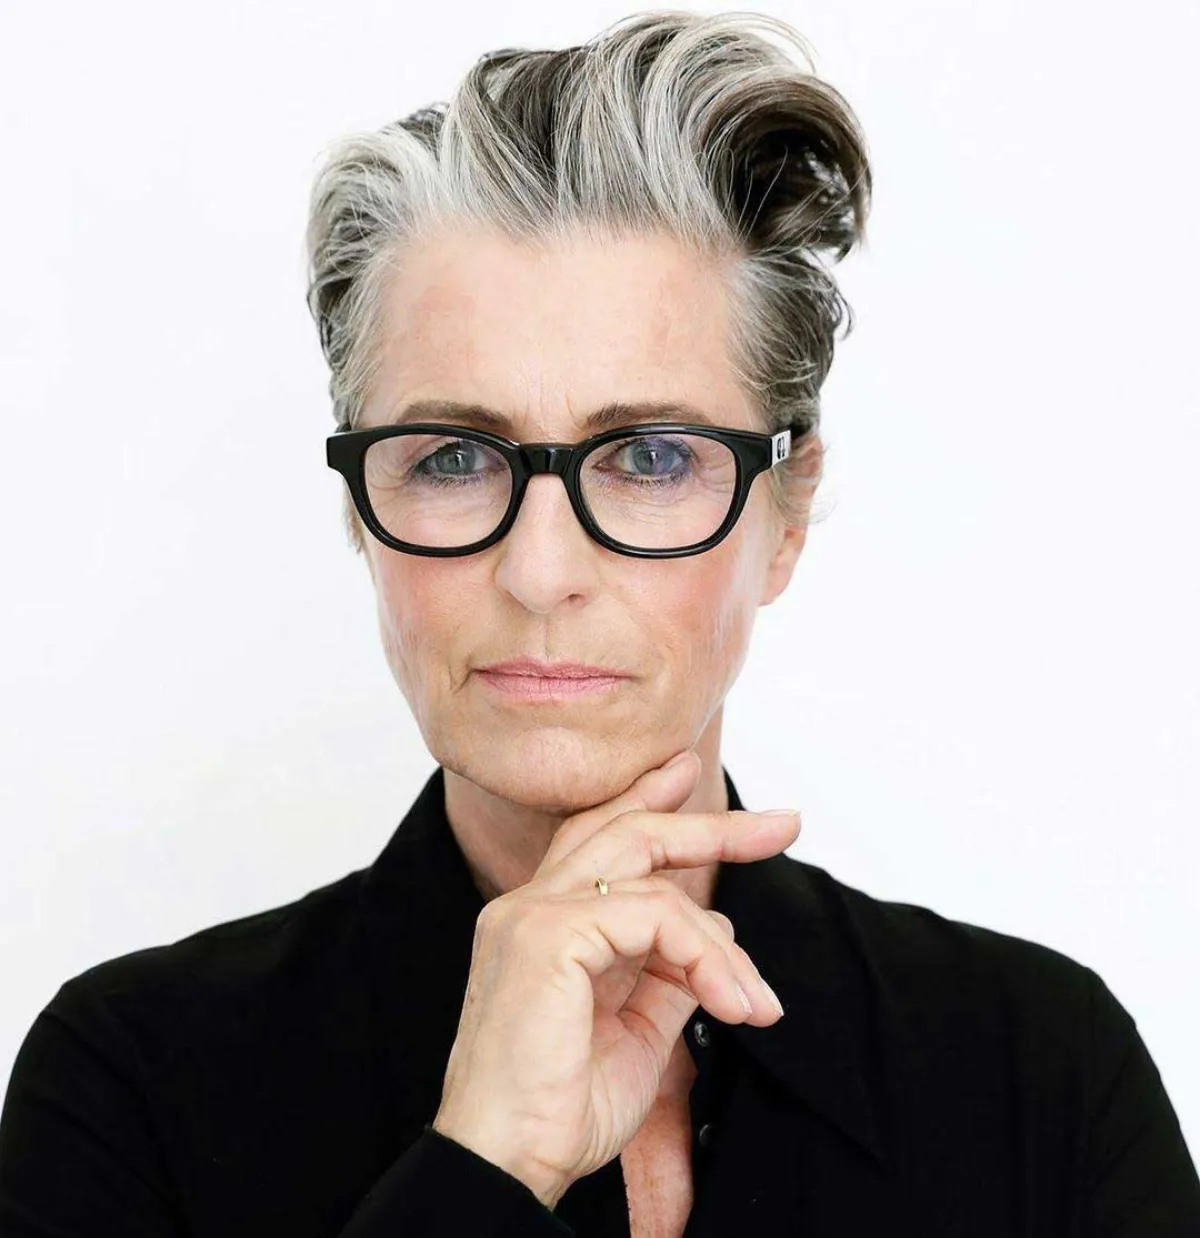 coupe de cheveux femme 50 ans avec lunettesfemme cheveux gris